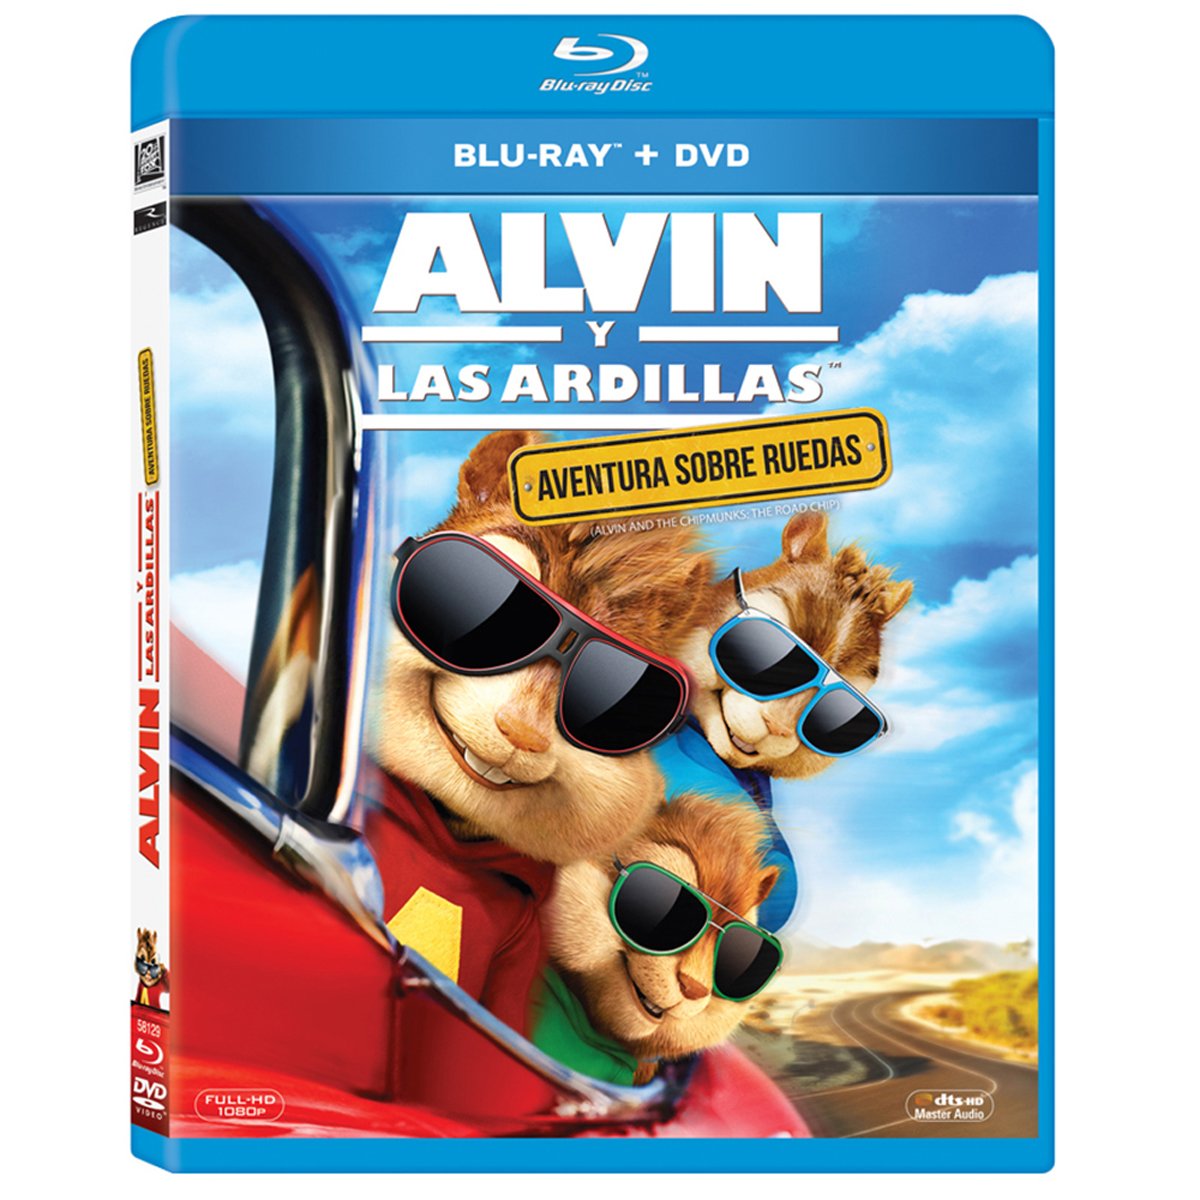 Bluray+Dvd Alvin y las Ardillas: Aventura sobre Ruedas